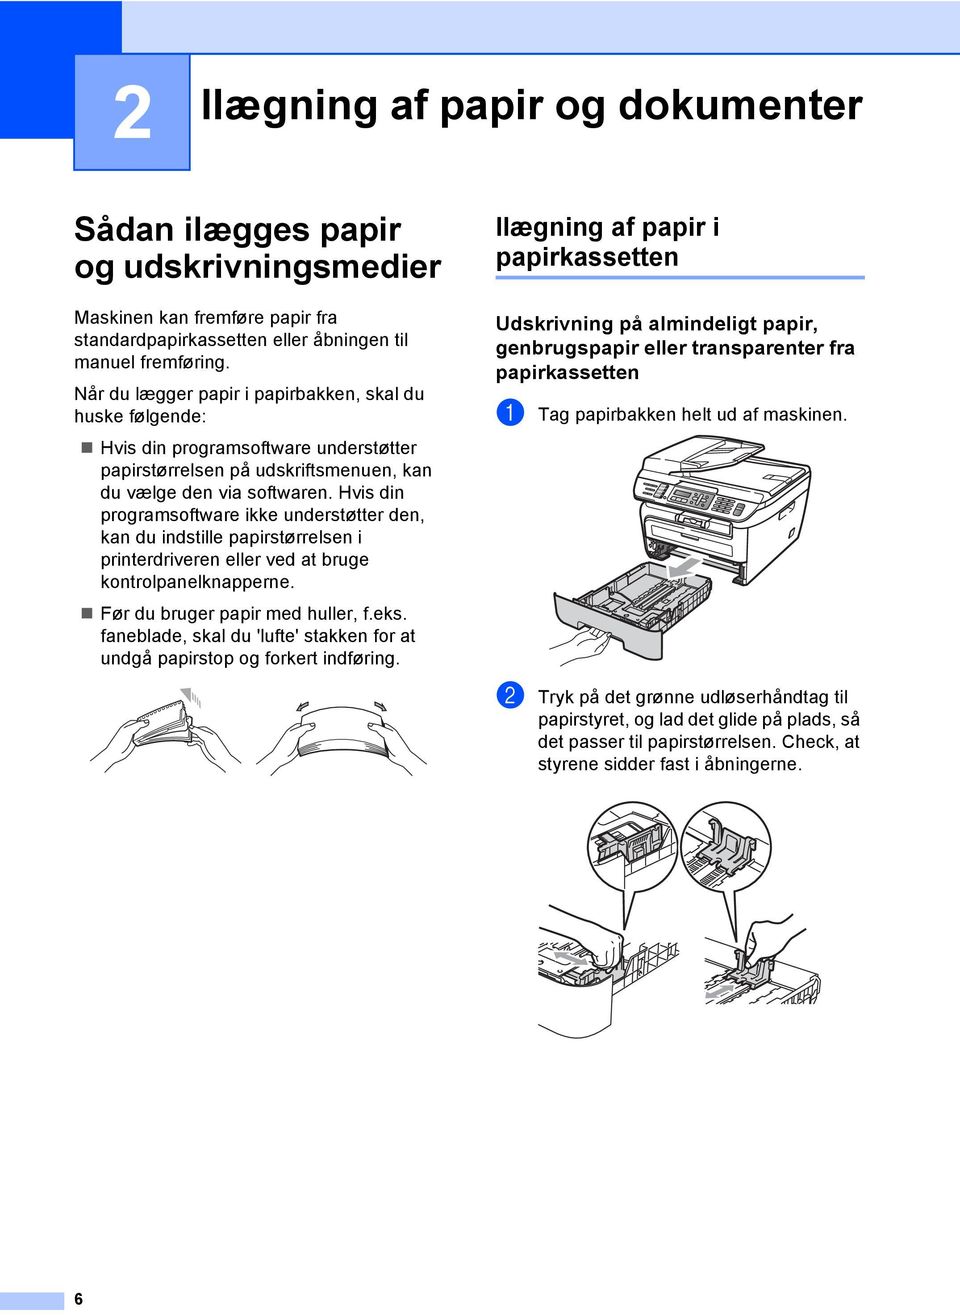 Hvis din programsoftware ikke understøtter den, kan du indstille papirstørrelsen i printerdriveren eller ved at bruge kontrolpanelknapperne. Før du bruger papir med huller, f.eks.